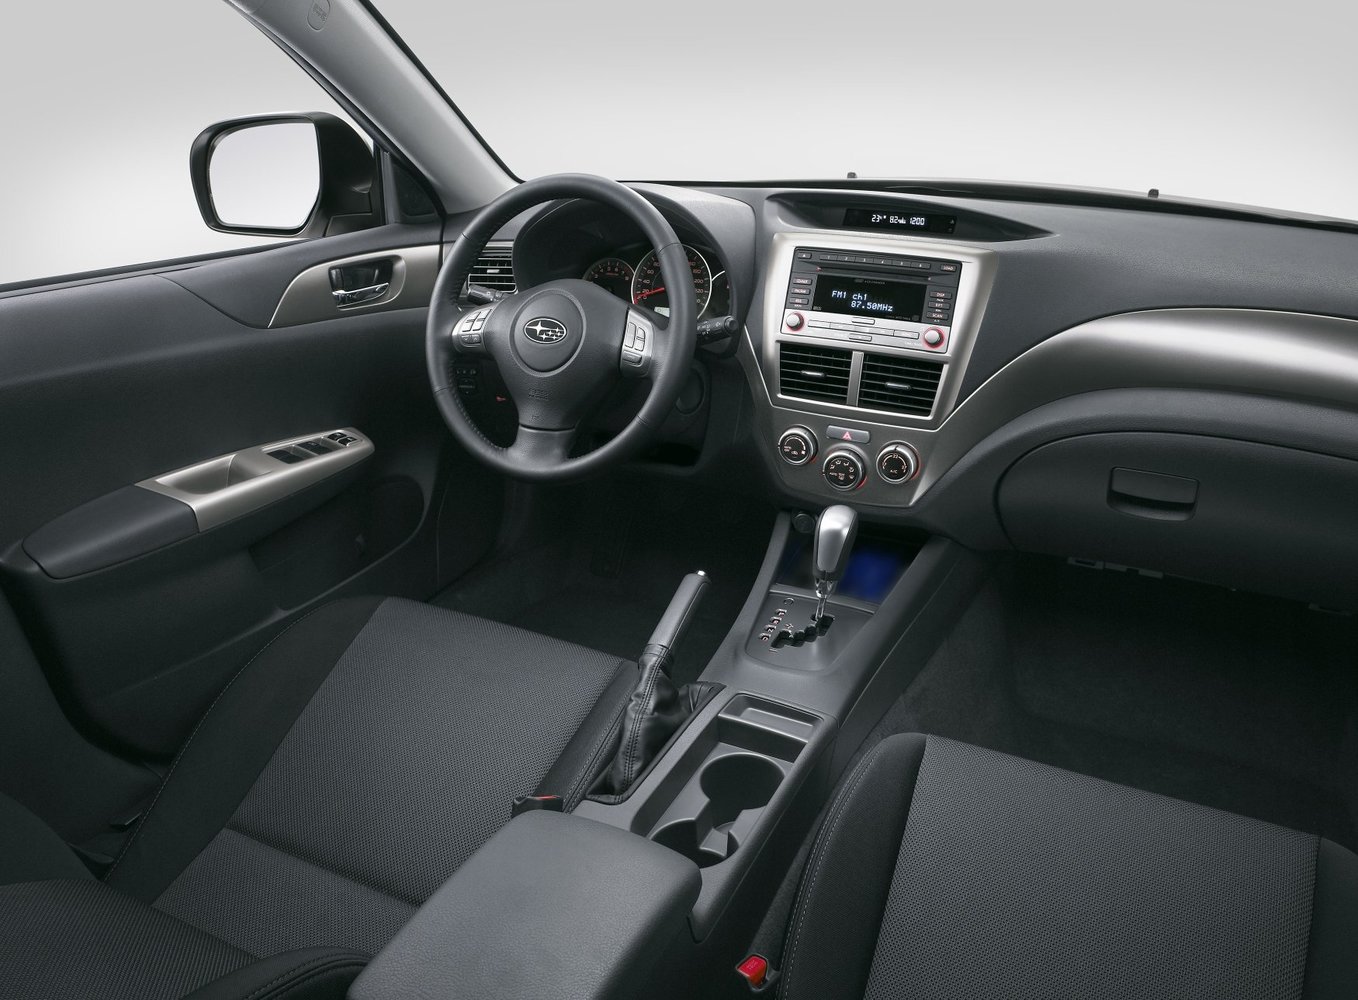 хэтчбек 5 дв. Subaru Impreza 2007 - 2011г выпуска модификация 1.5 AT (110 л.с.)